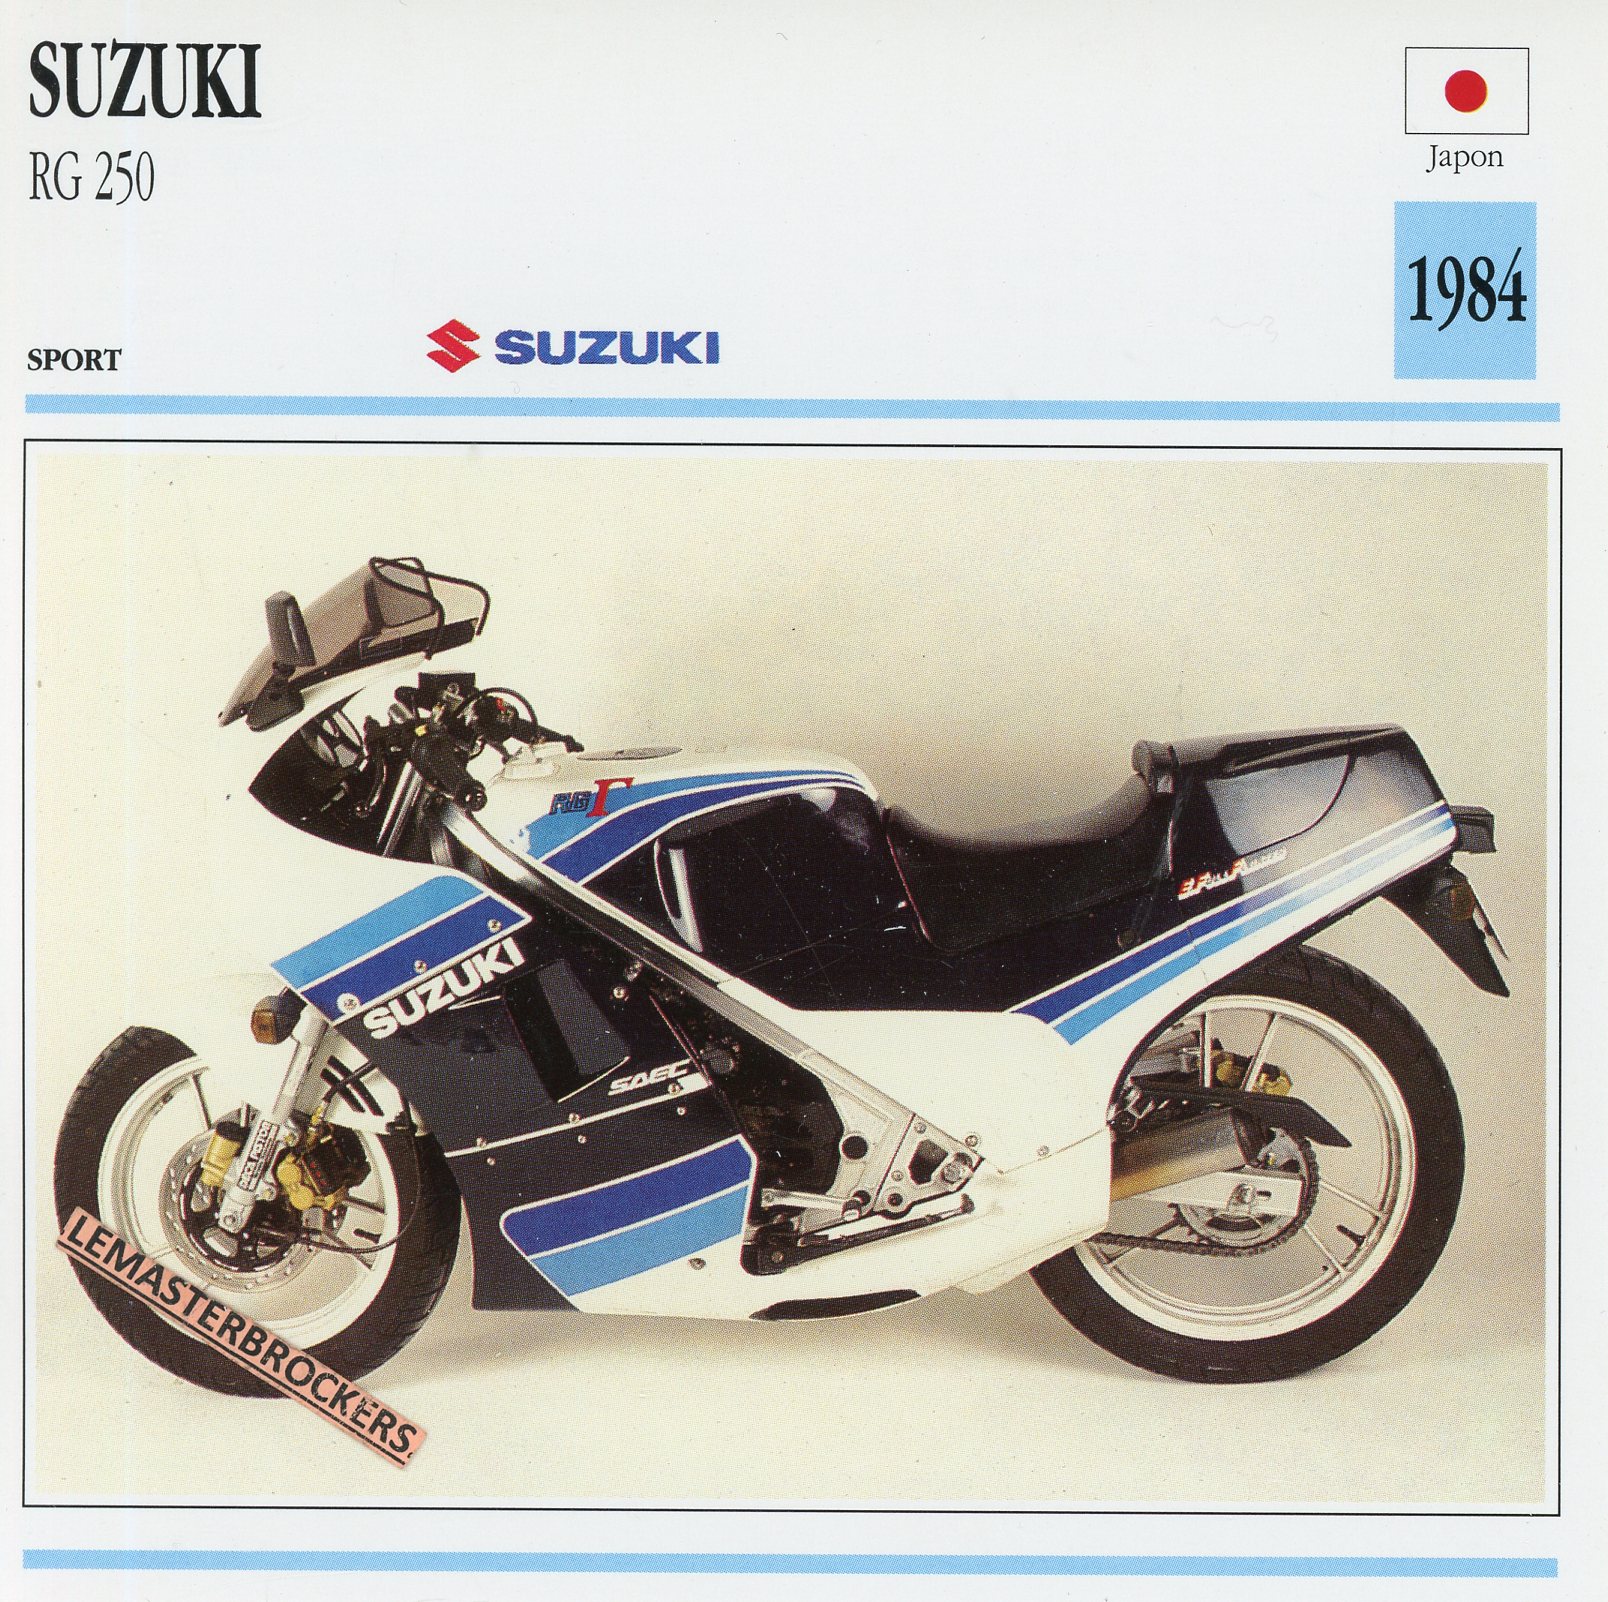 SUZUKI-RG-250-GAMMA-RG250-1984-FICHE-MOTO-LEMASTERBROCKERS